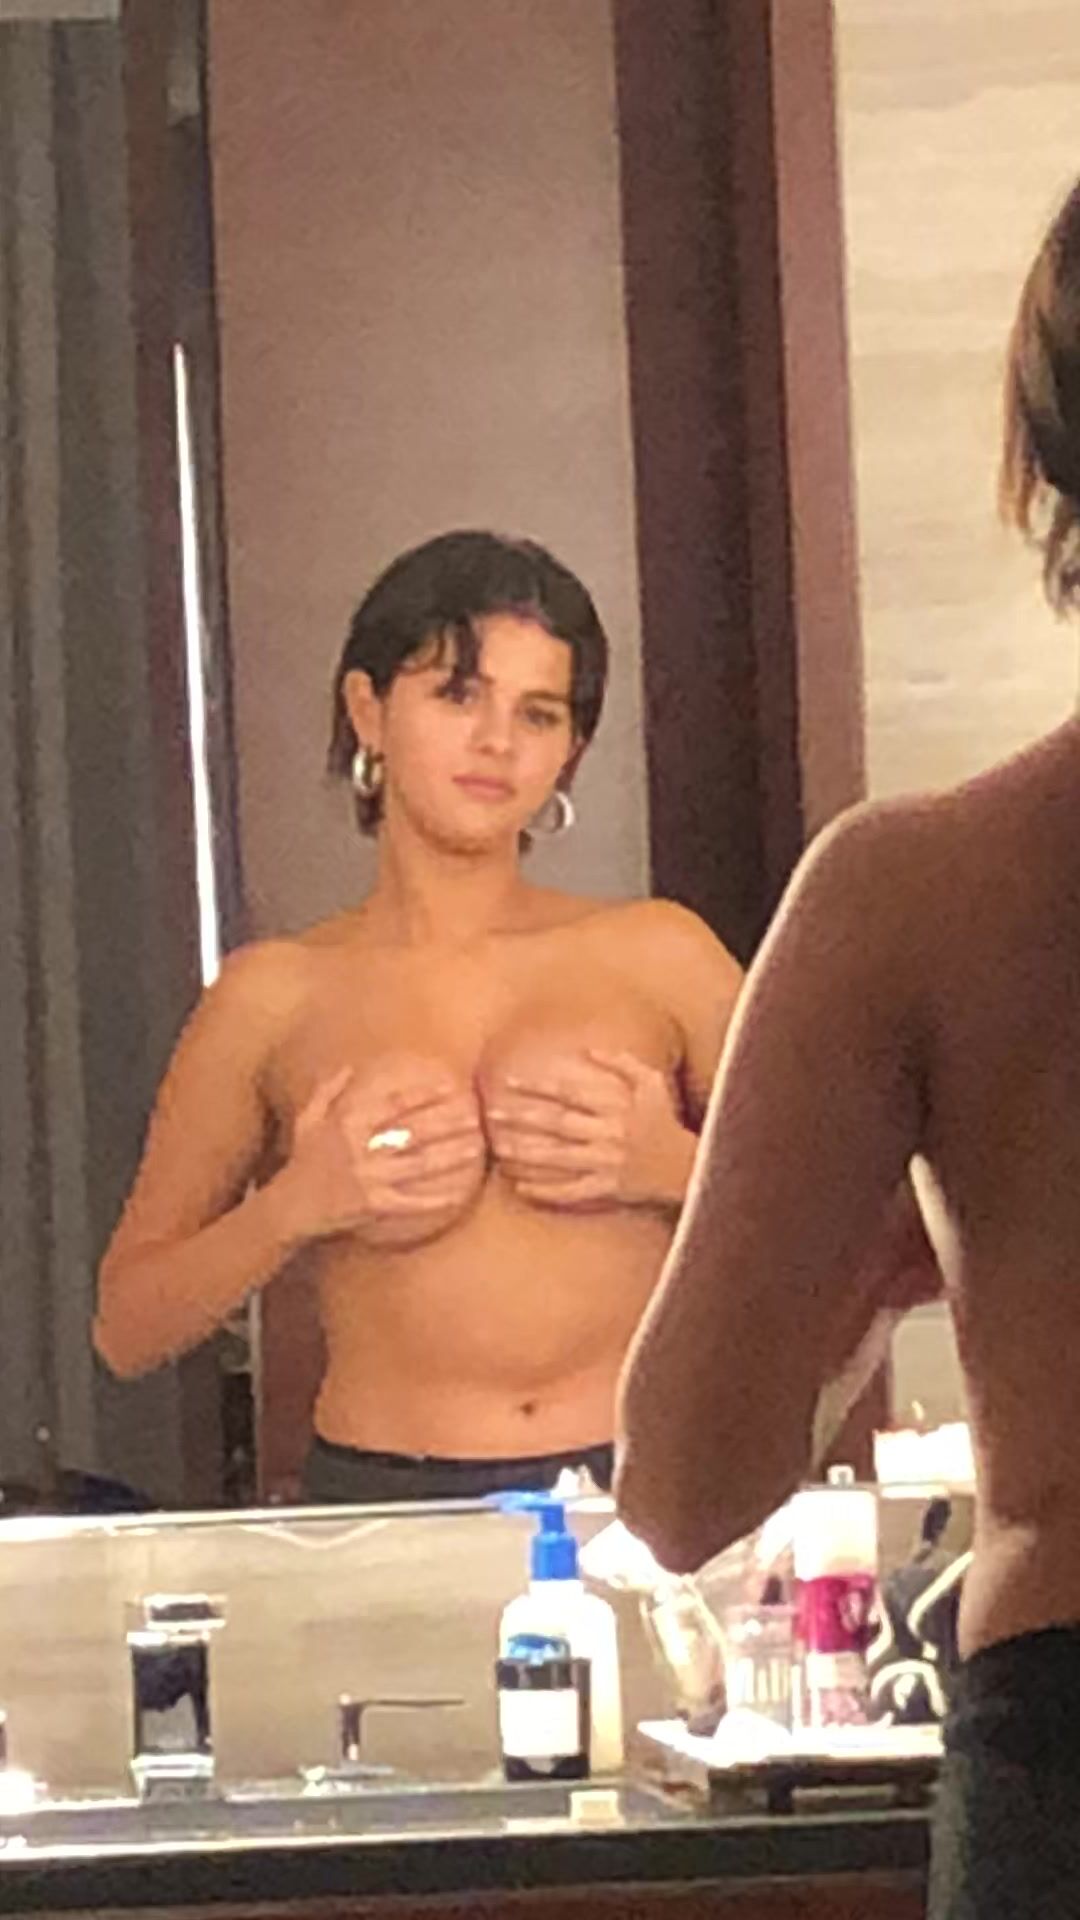 Selena Gomez boobs squeezing